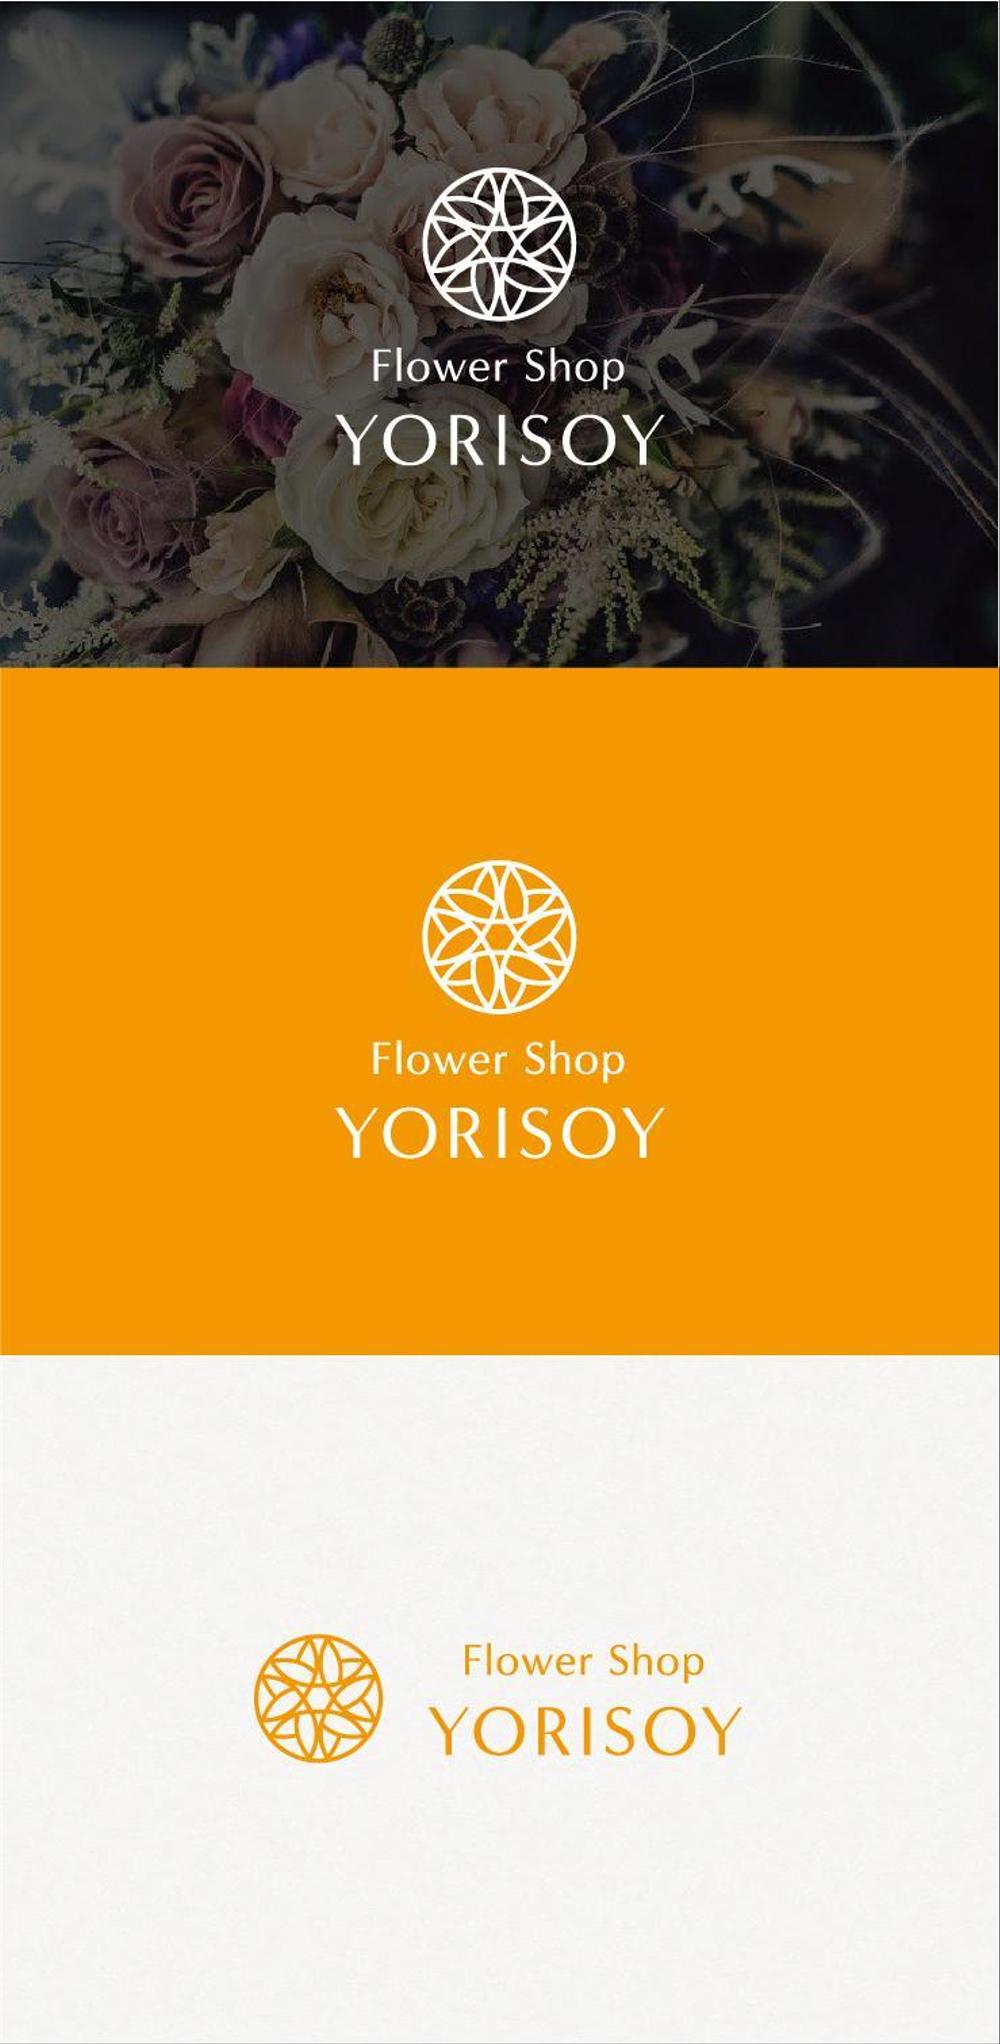 心を届ける花屋「Flower Shop YORISOY（よりそい）」のロゴ（商標登録予定なし）